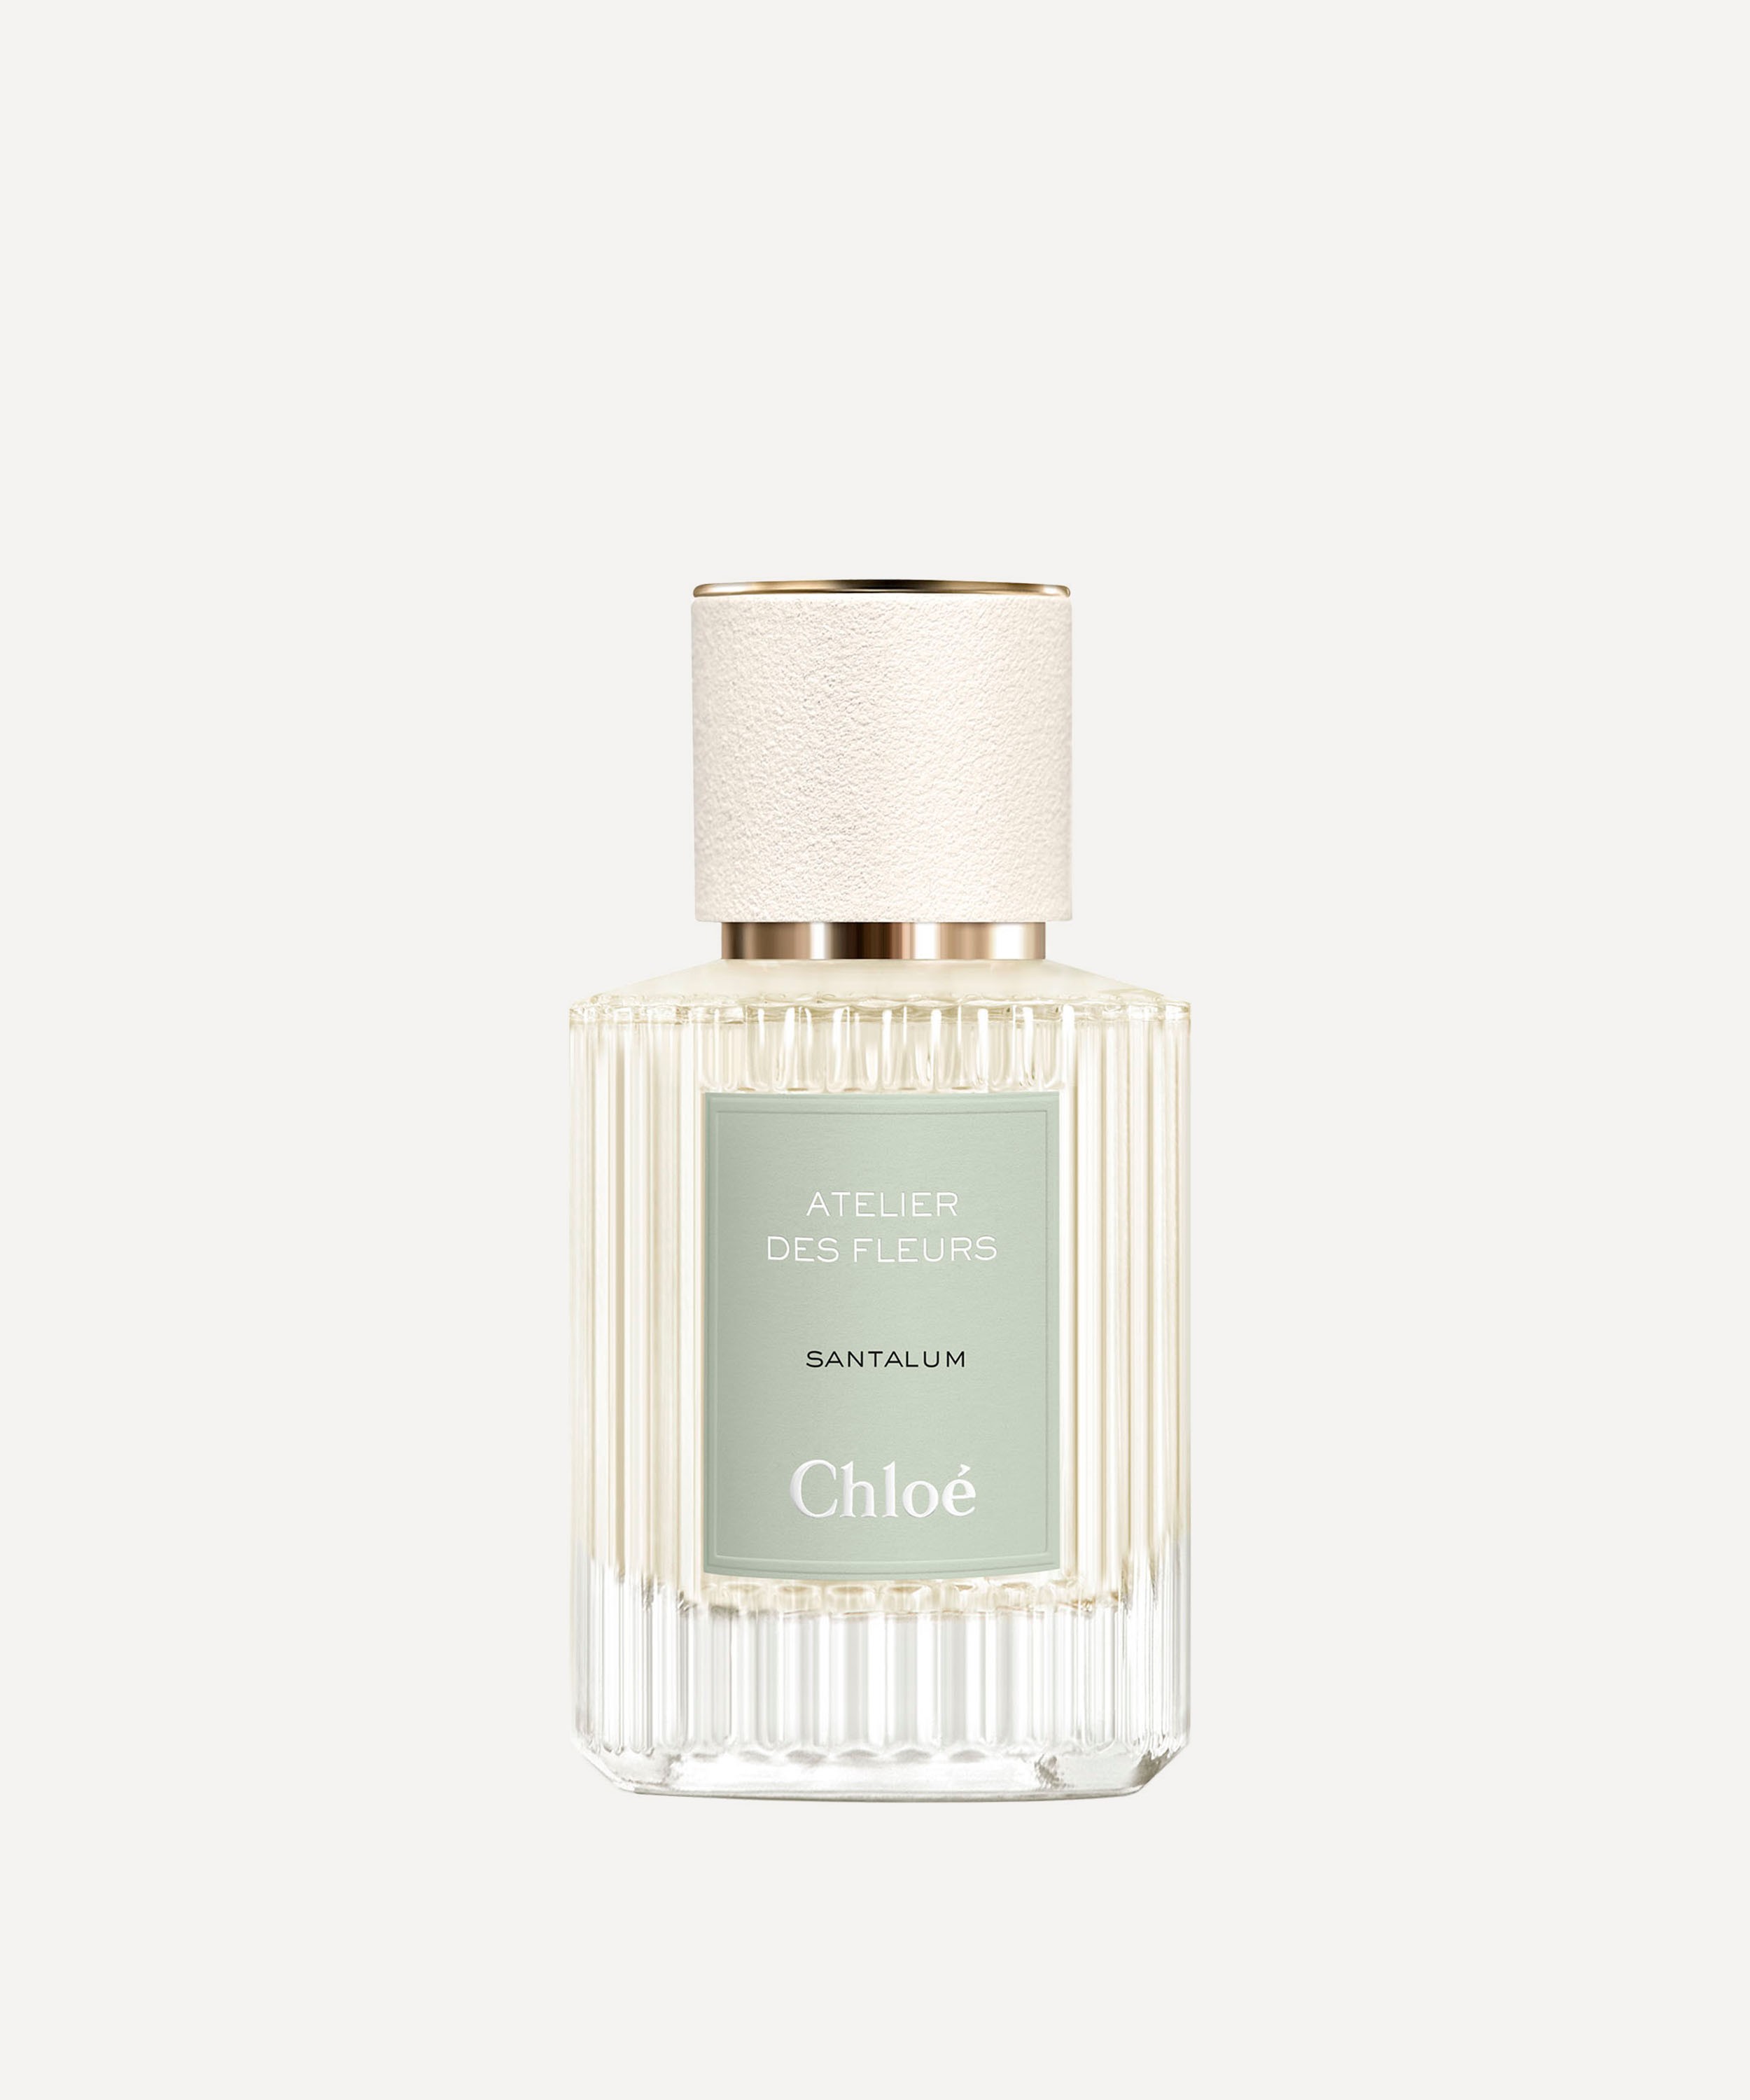 Chloé - Atelier des Fleurs Santalum Eau de Parfum 50ml